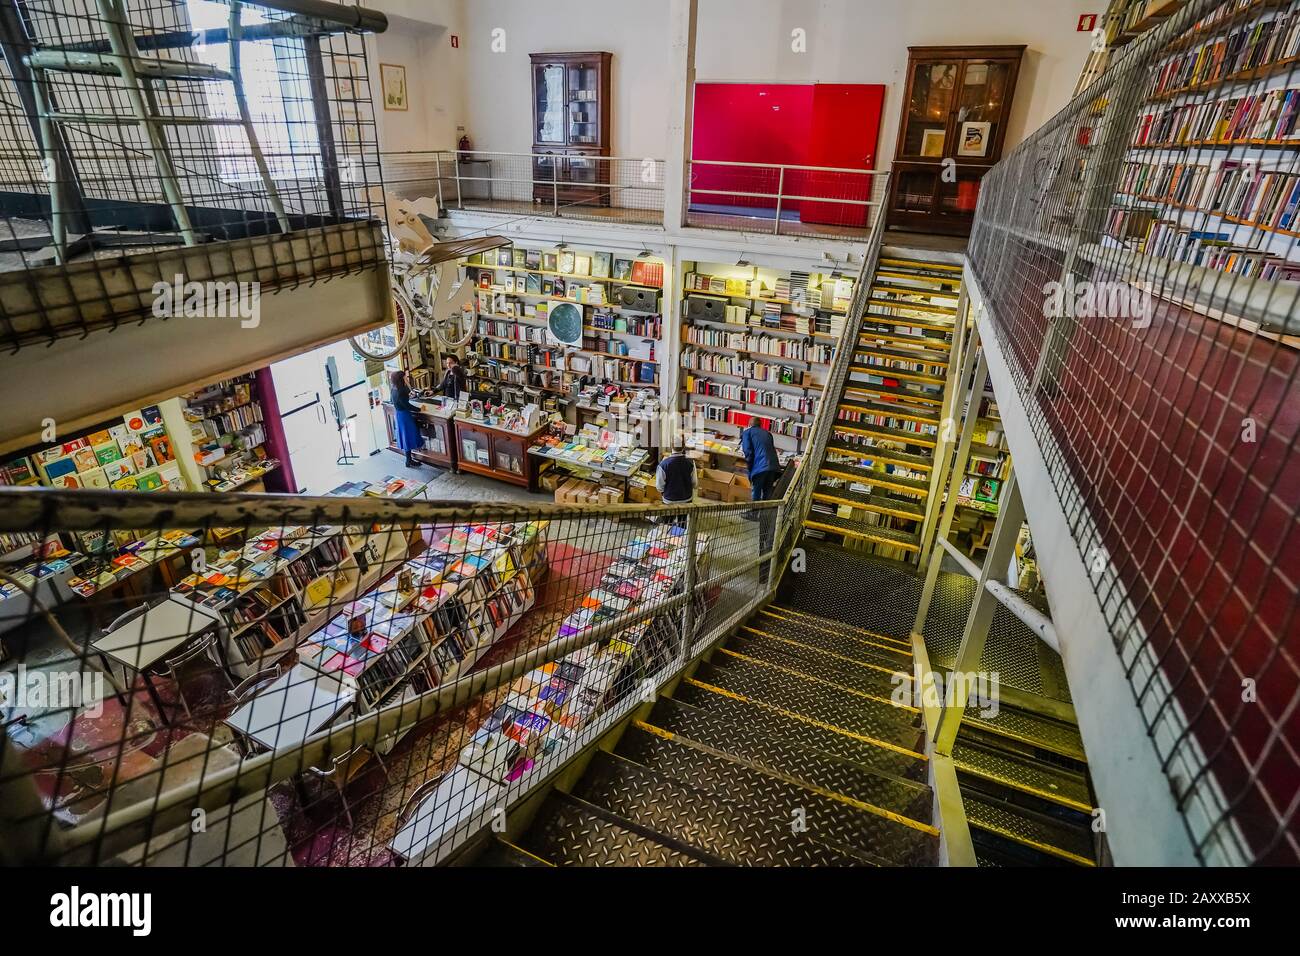 Ler Devagar è un ex laboratorio di stampa di giornali, ora convertito in una libreria in fabbrica LX a Lisbona Portogallo. Il suo motto significa leggere lentamente. Foto Stock